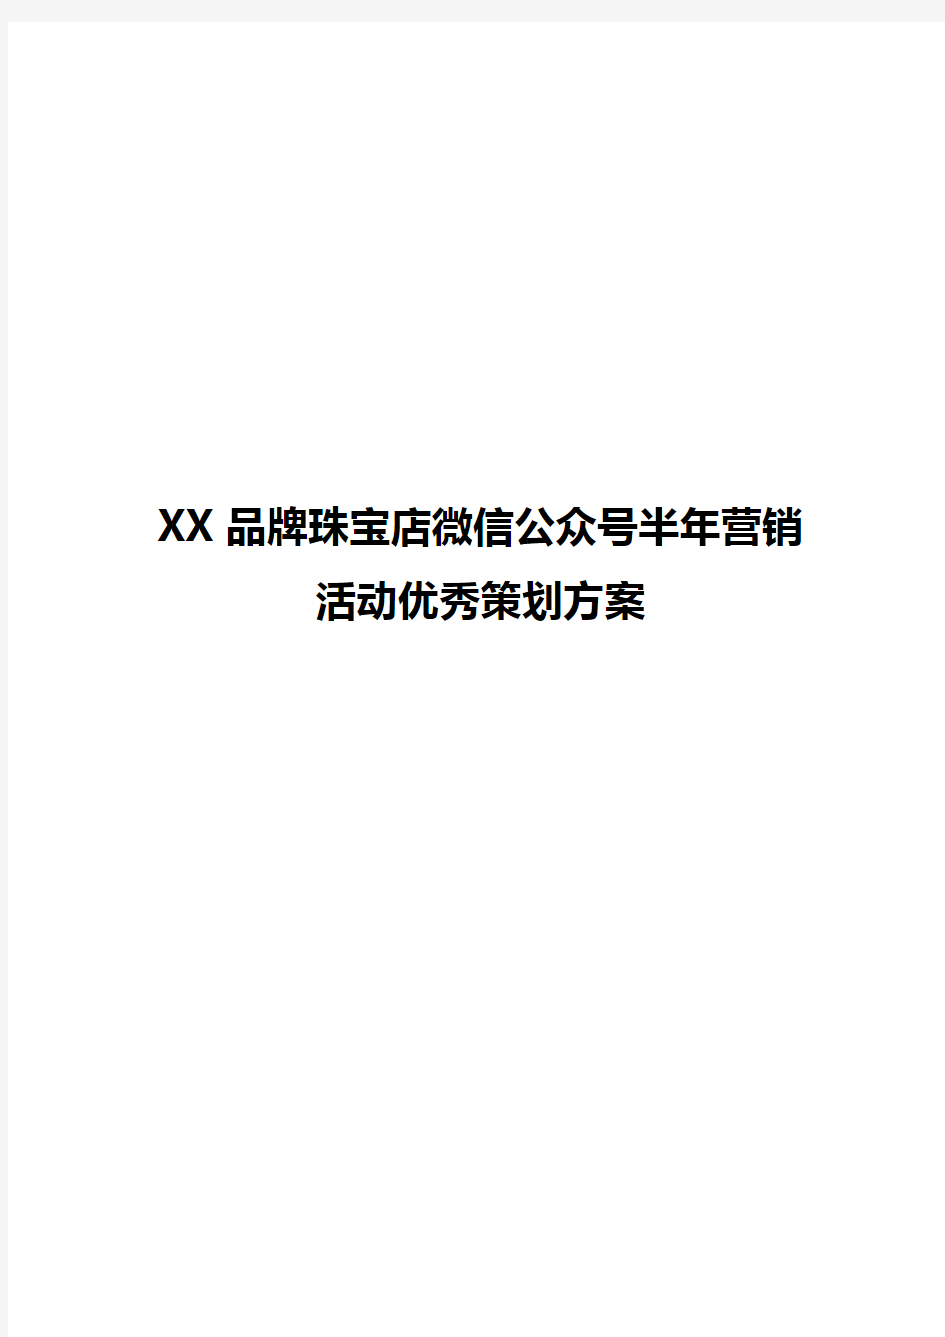 【实用范本】XX品牌珠宝店微信公众号半年营销活动优秀策划方案